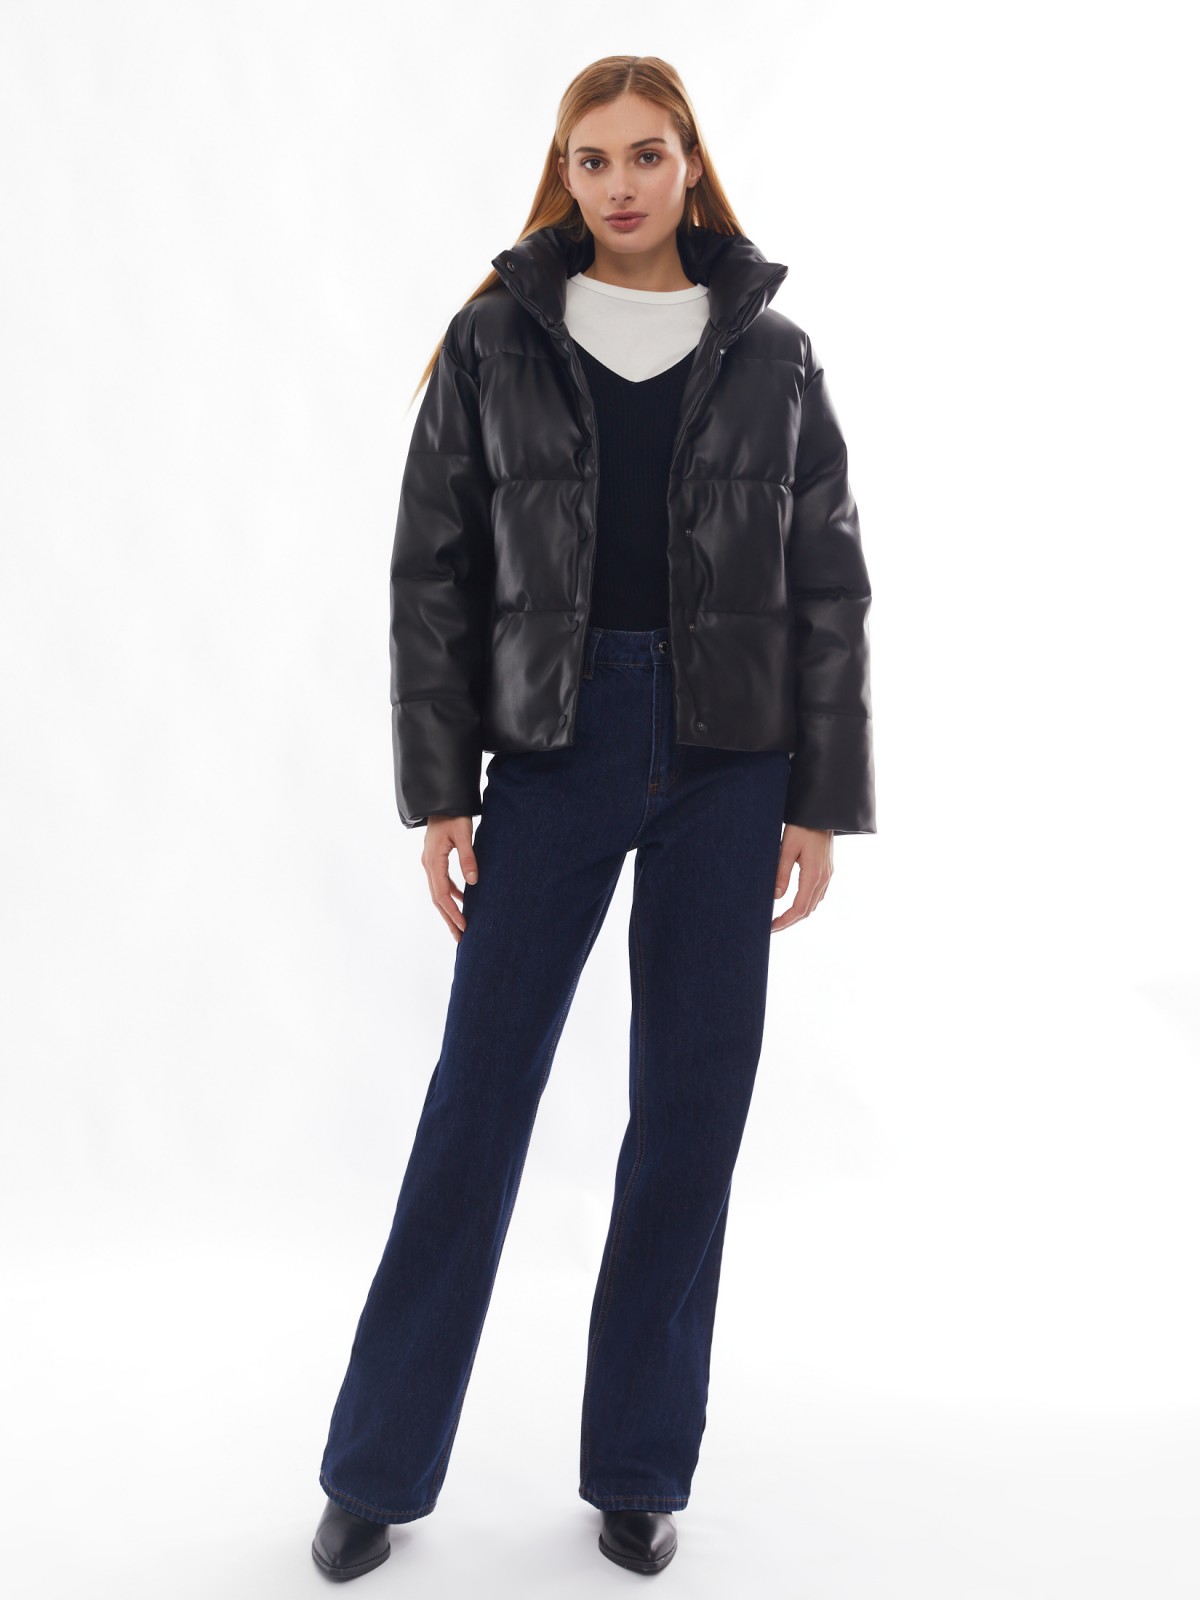 Тёплая стёганая дутая куртка из экокожи с высоким воротником zolla 02412516F034, цвет черный, размер XS - фото 2